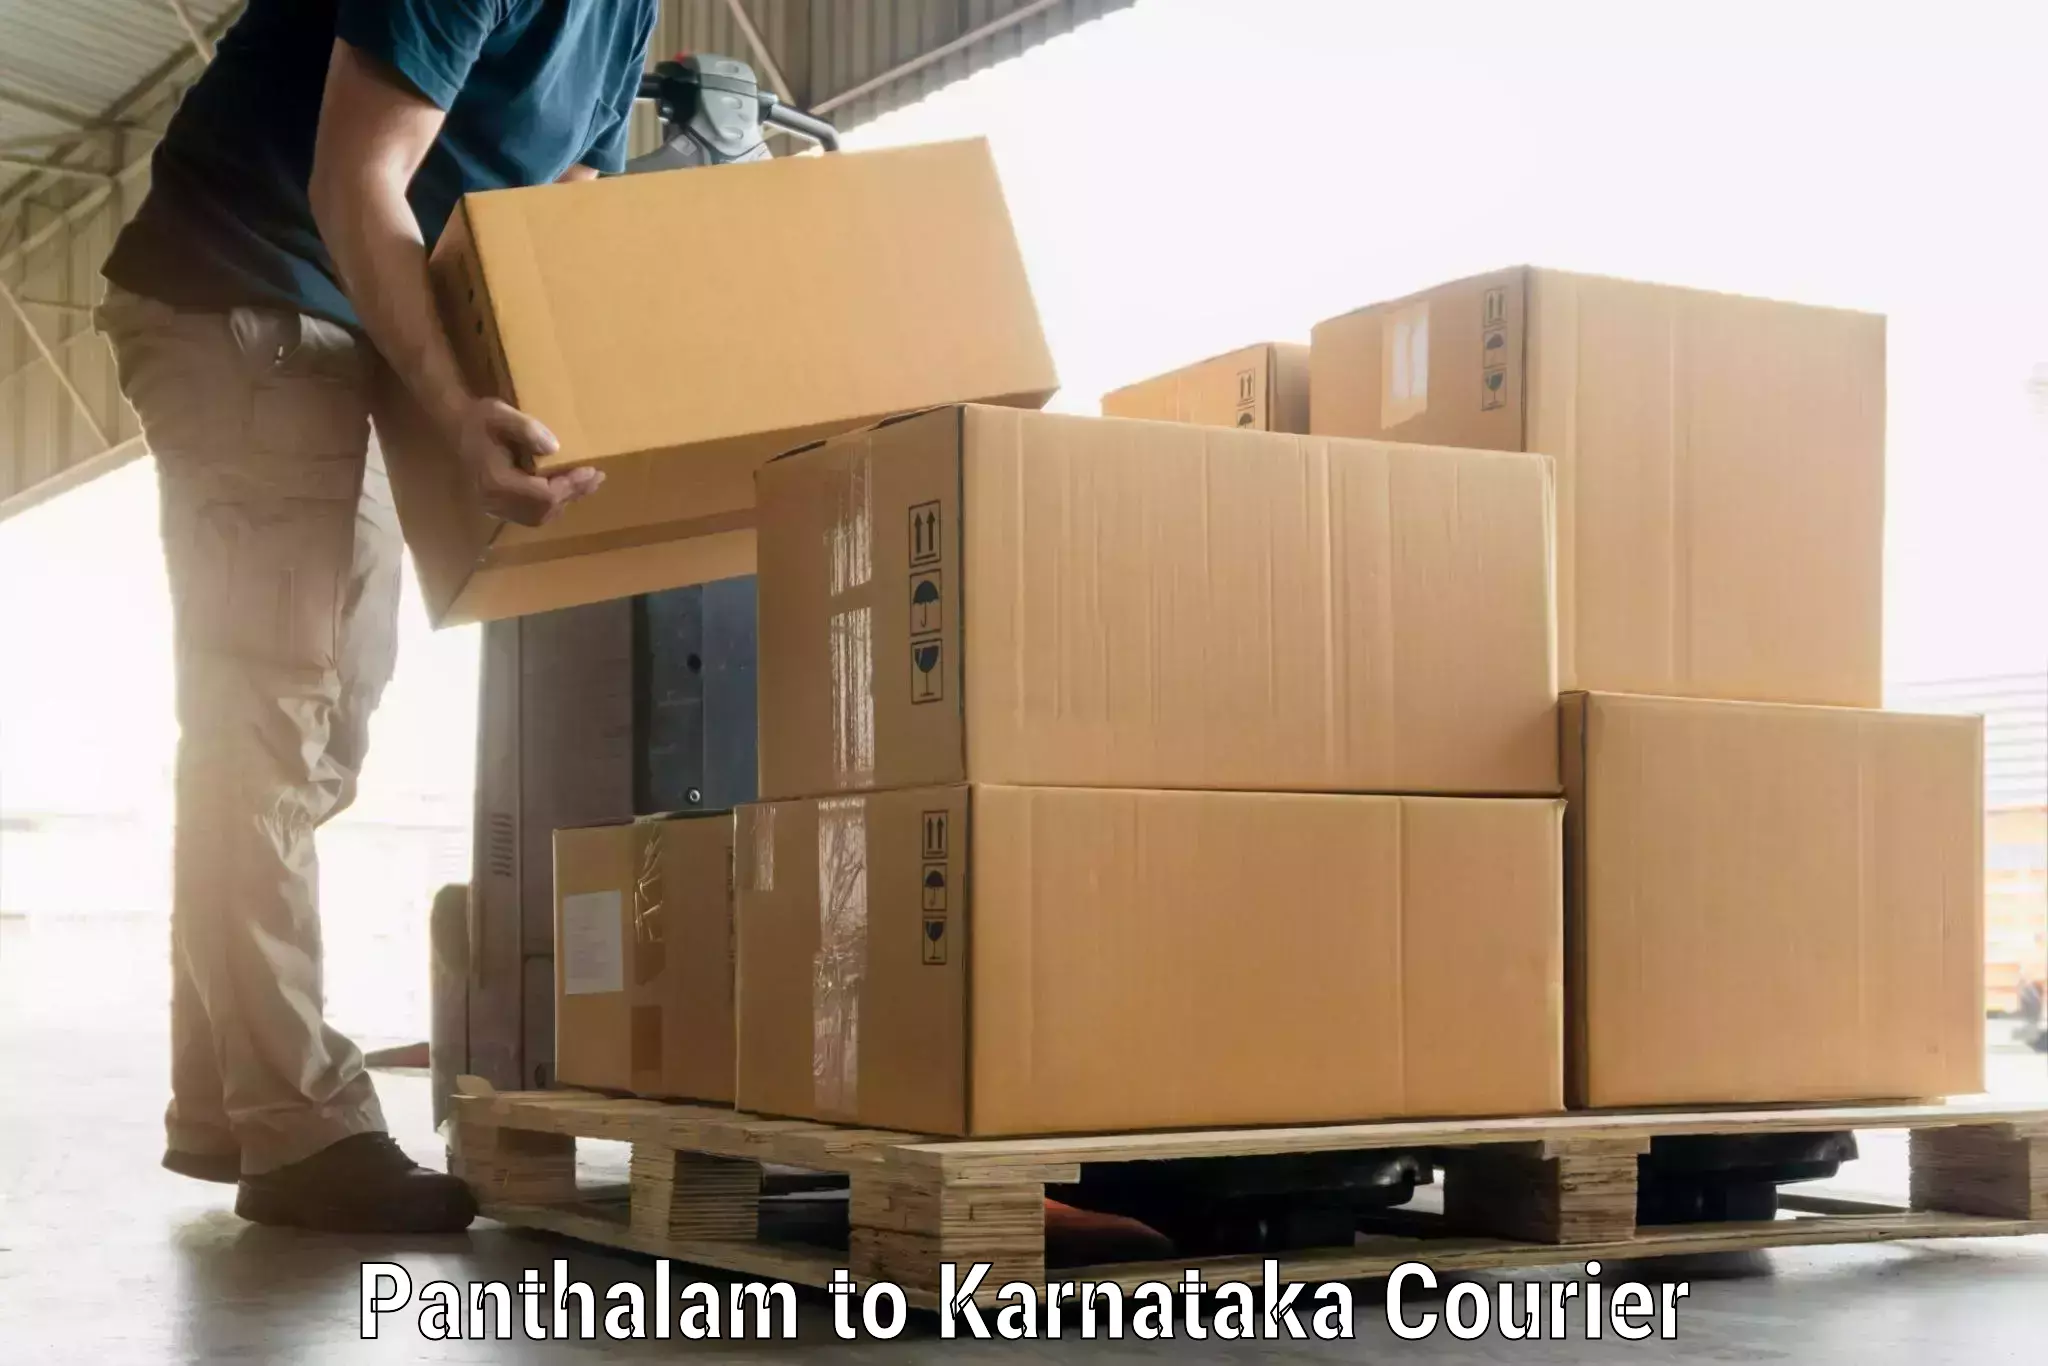 Baggage relocation service Panthalam to Karnataka